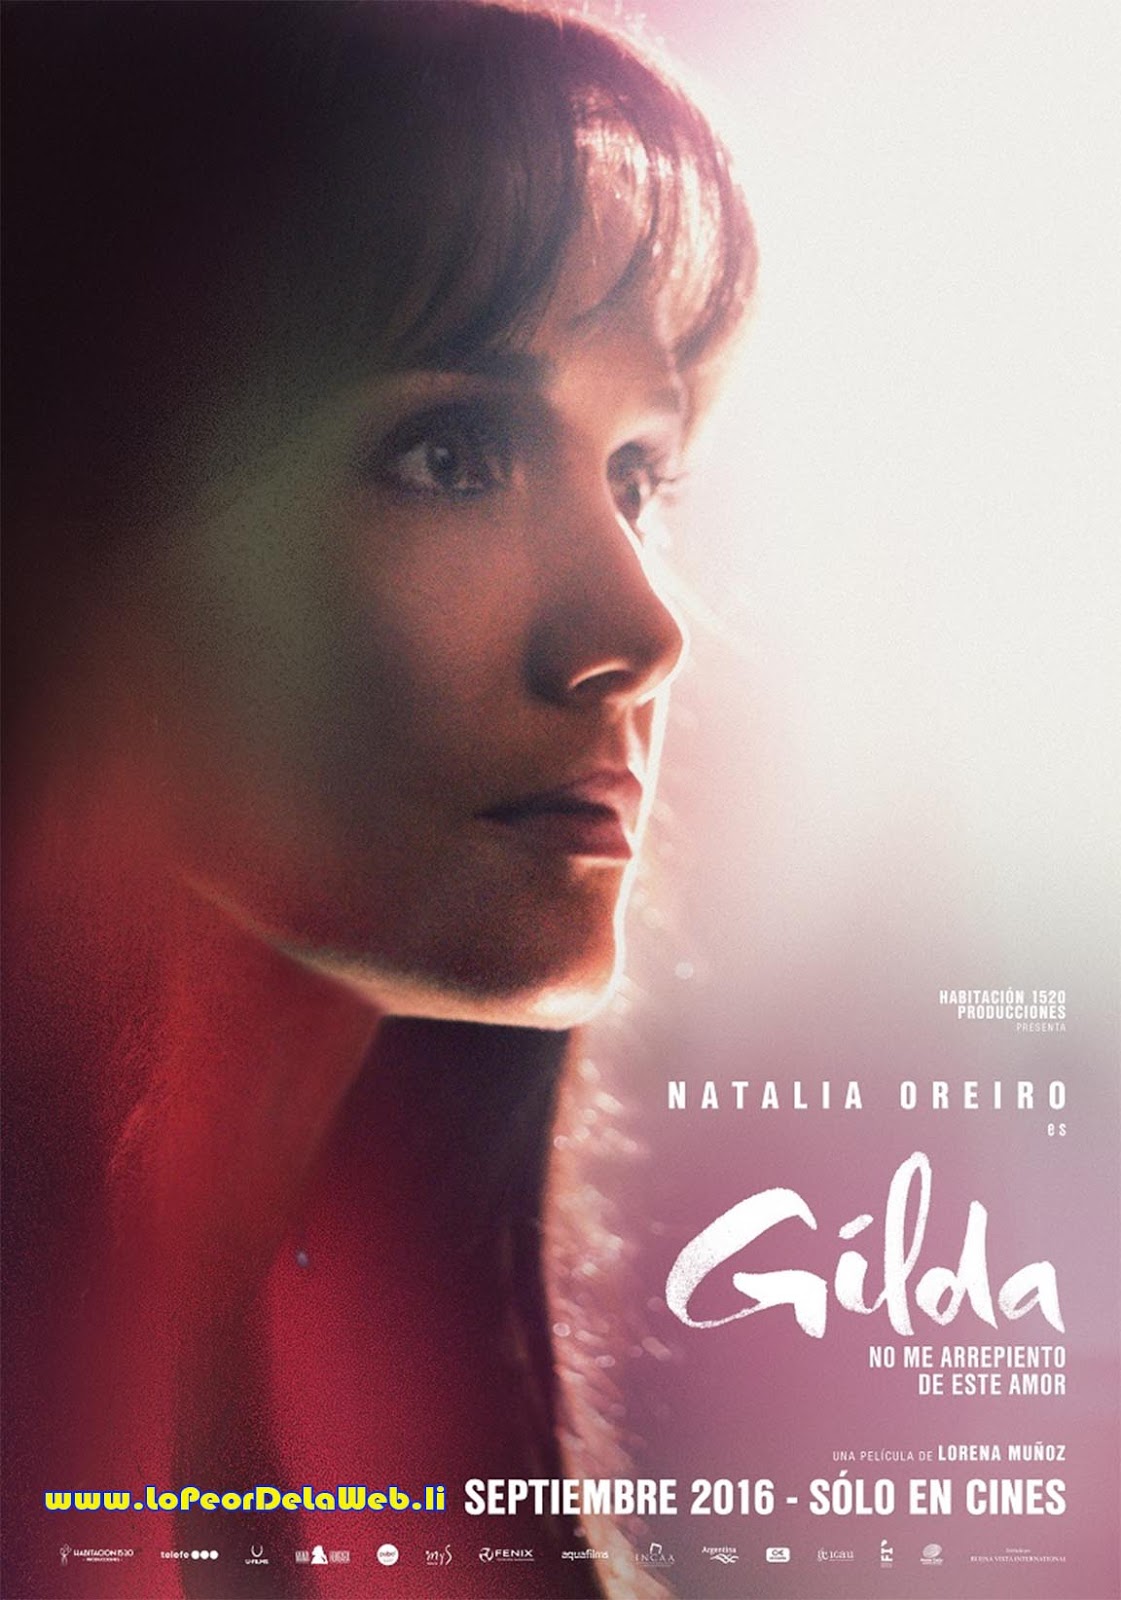 Gilda: No Me Arrepiento De Este Amor (2016 - Natalia Oreiro)